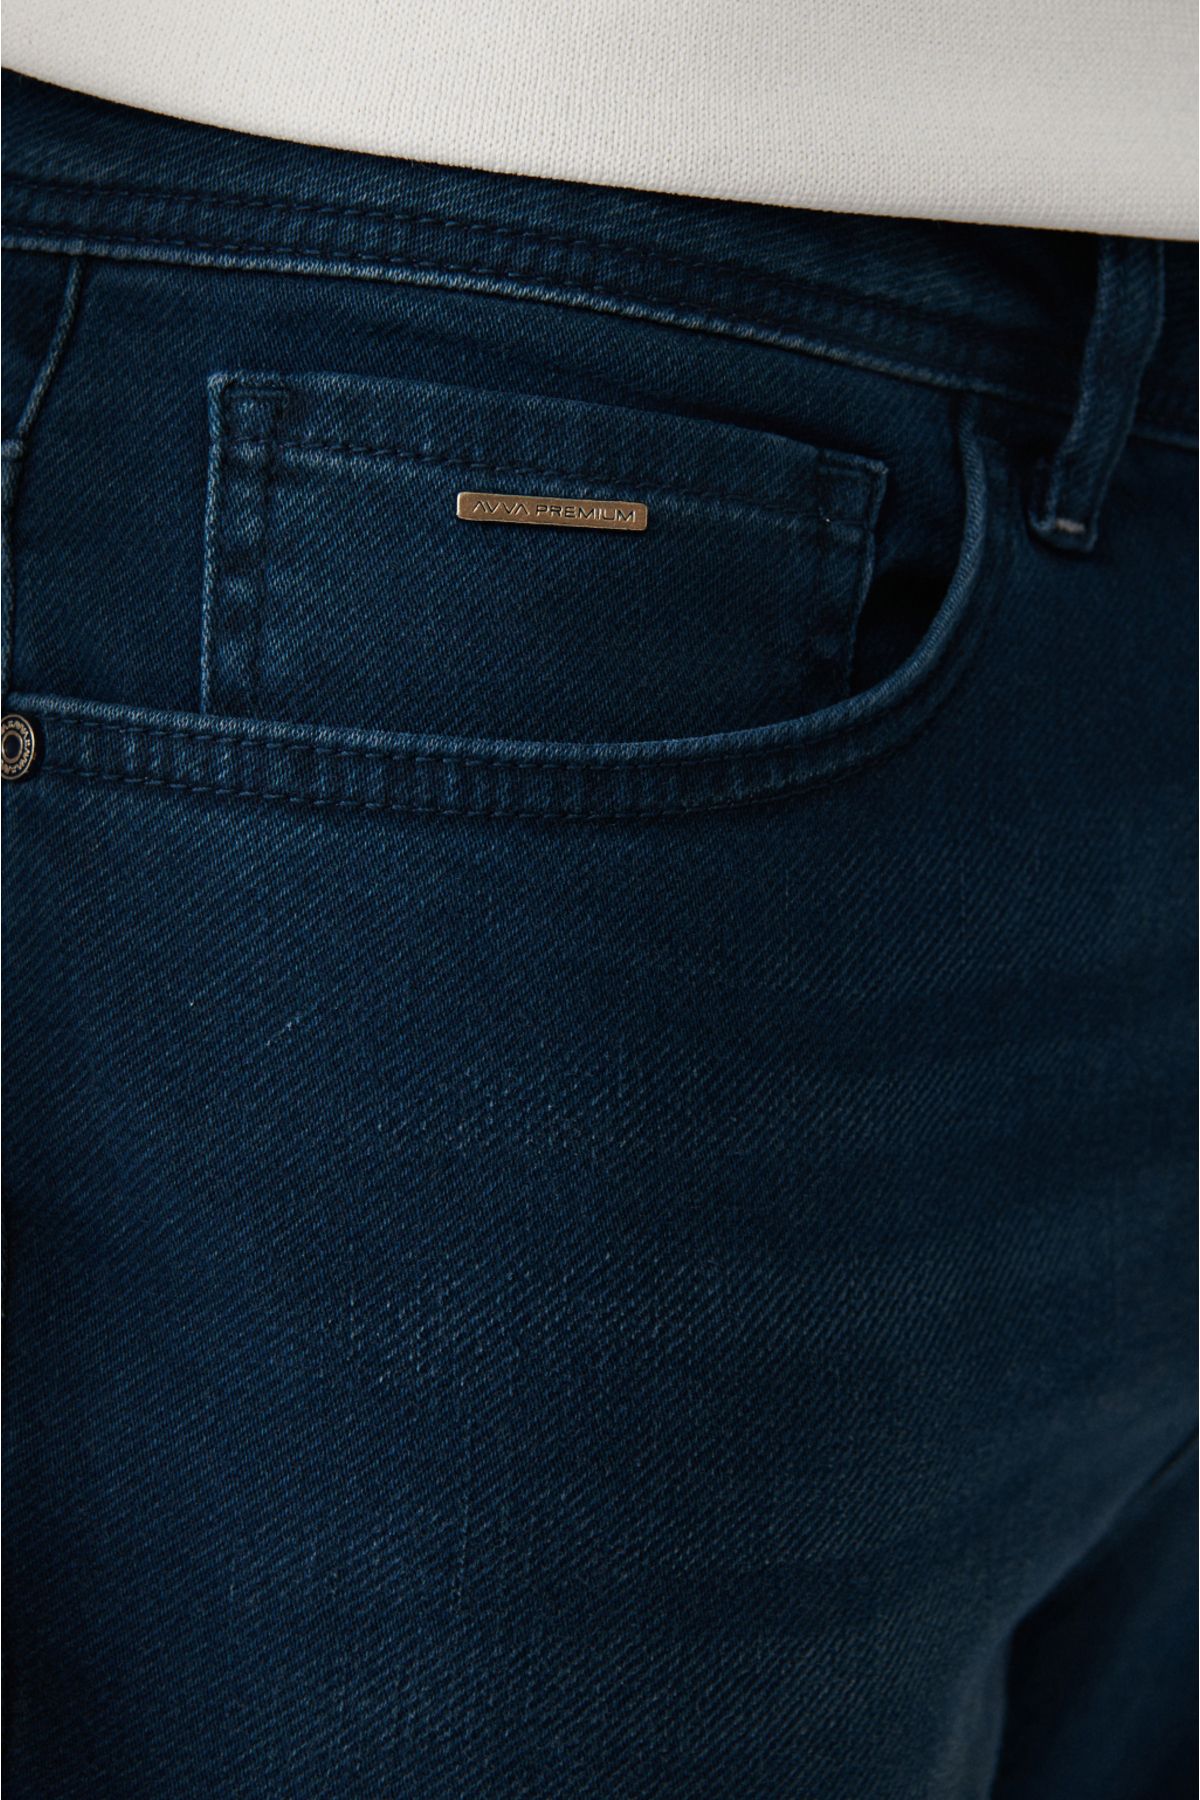 Avva شلوار جین مردانه نیلی عتیقه شسته شده باریک و Flexible Fit Slim B003521